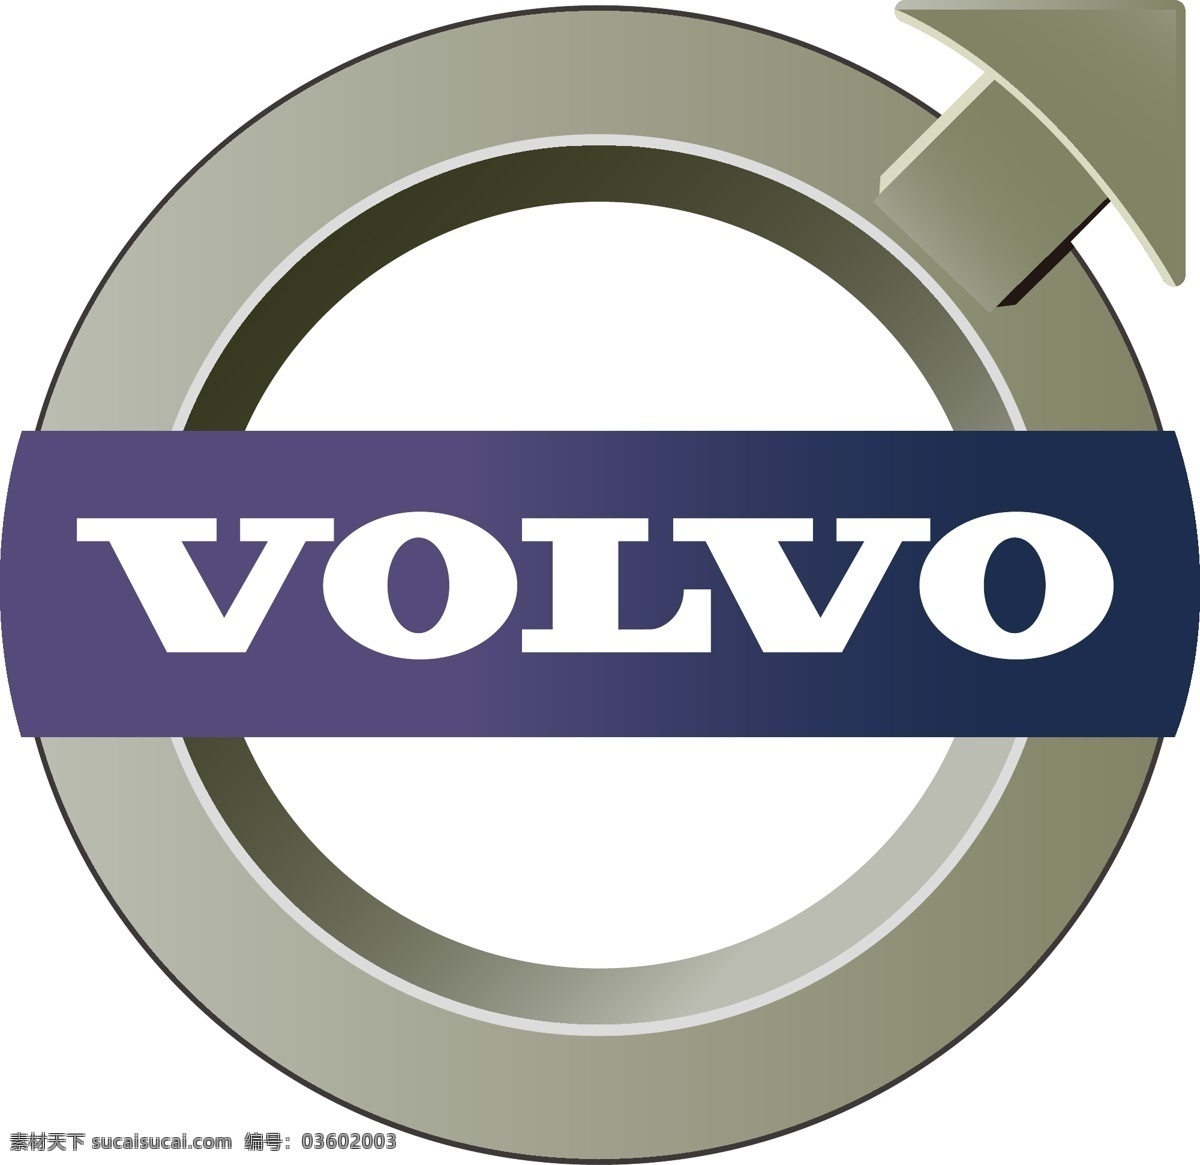 沃尔沃 汽车标志 沃尔沃标志 volvo 矢量 公共标识标志 标识标志图标